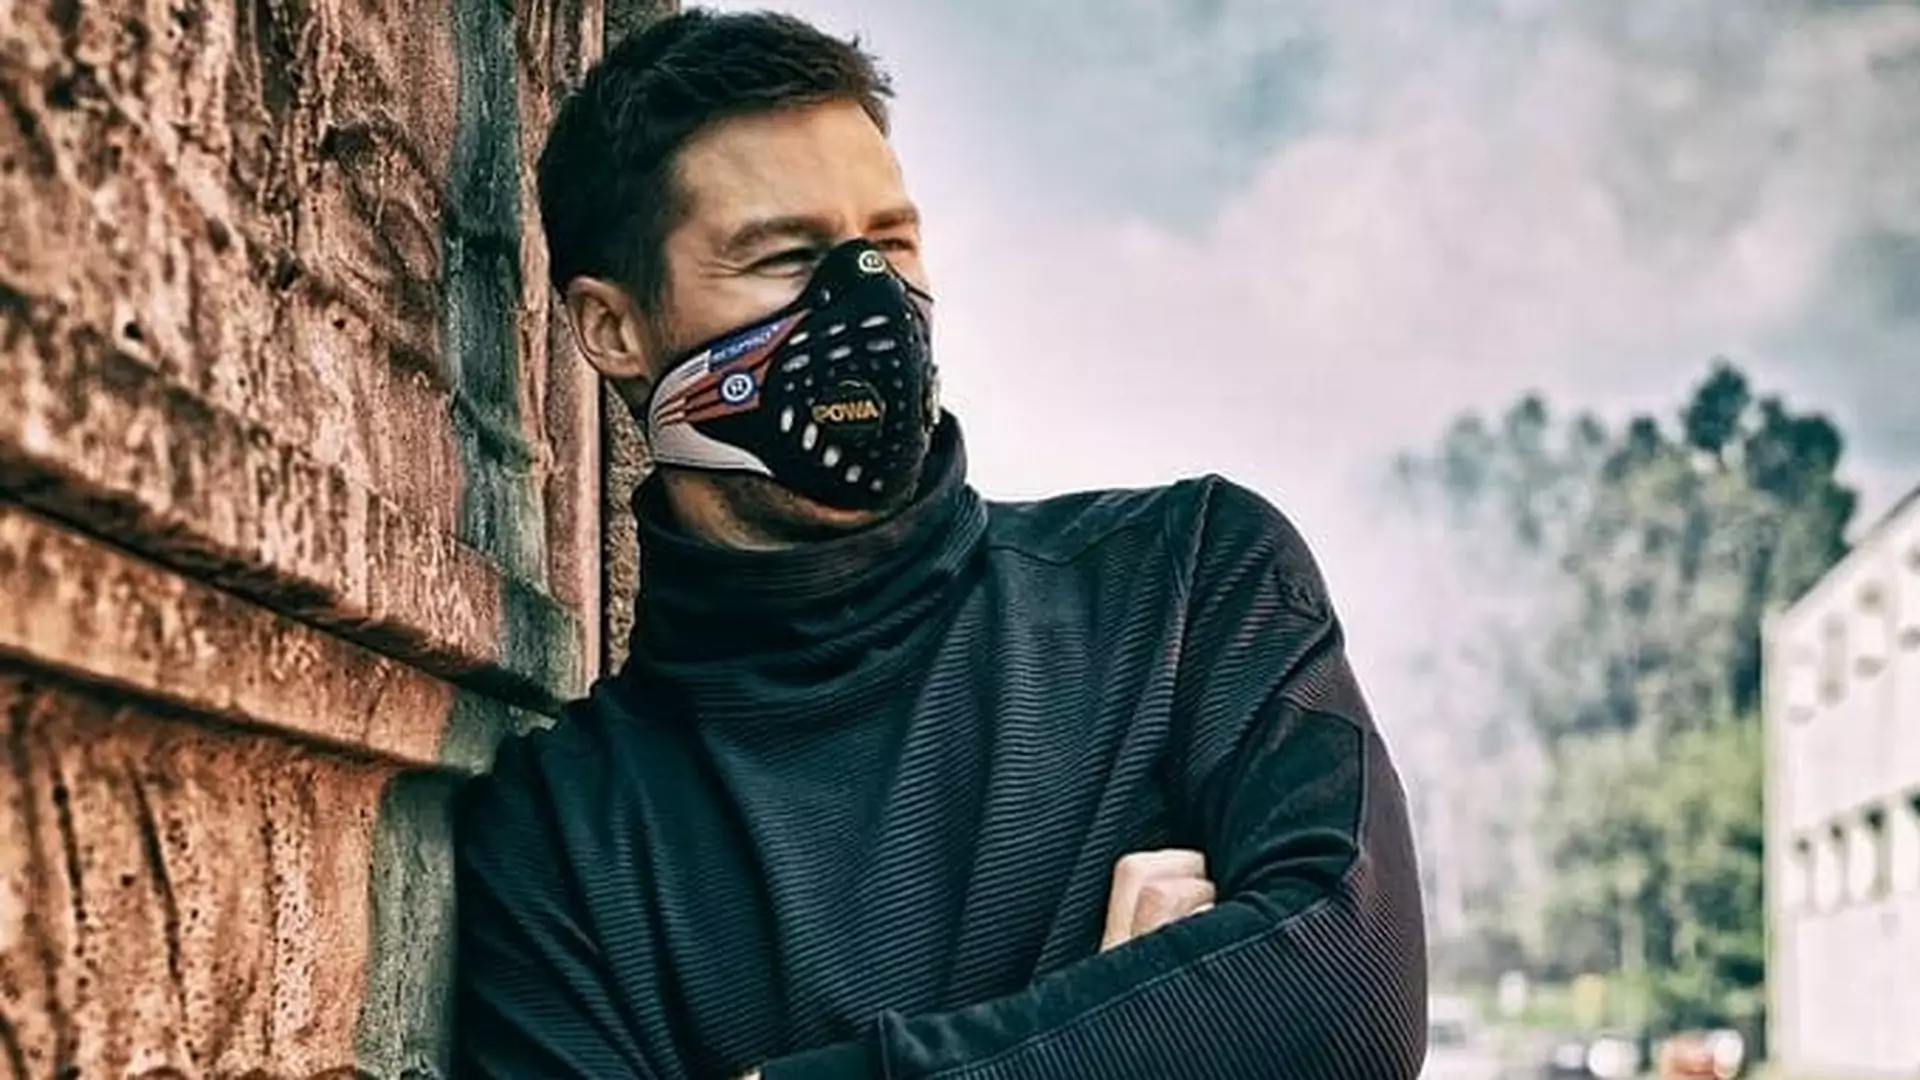 Walka ze smogiem zawieszona na 2 lata. Oto maski antysmogowe, które wam się przydadzą